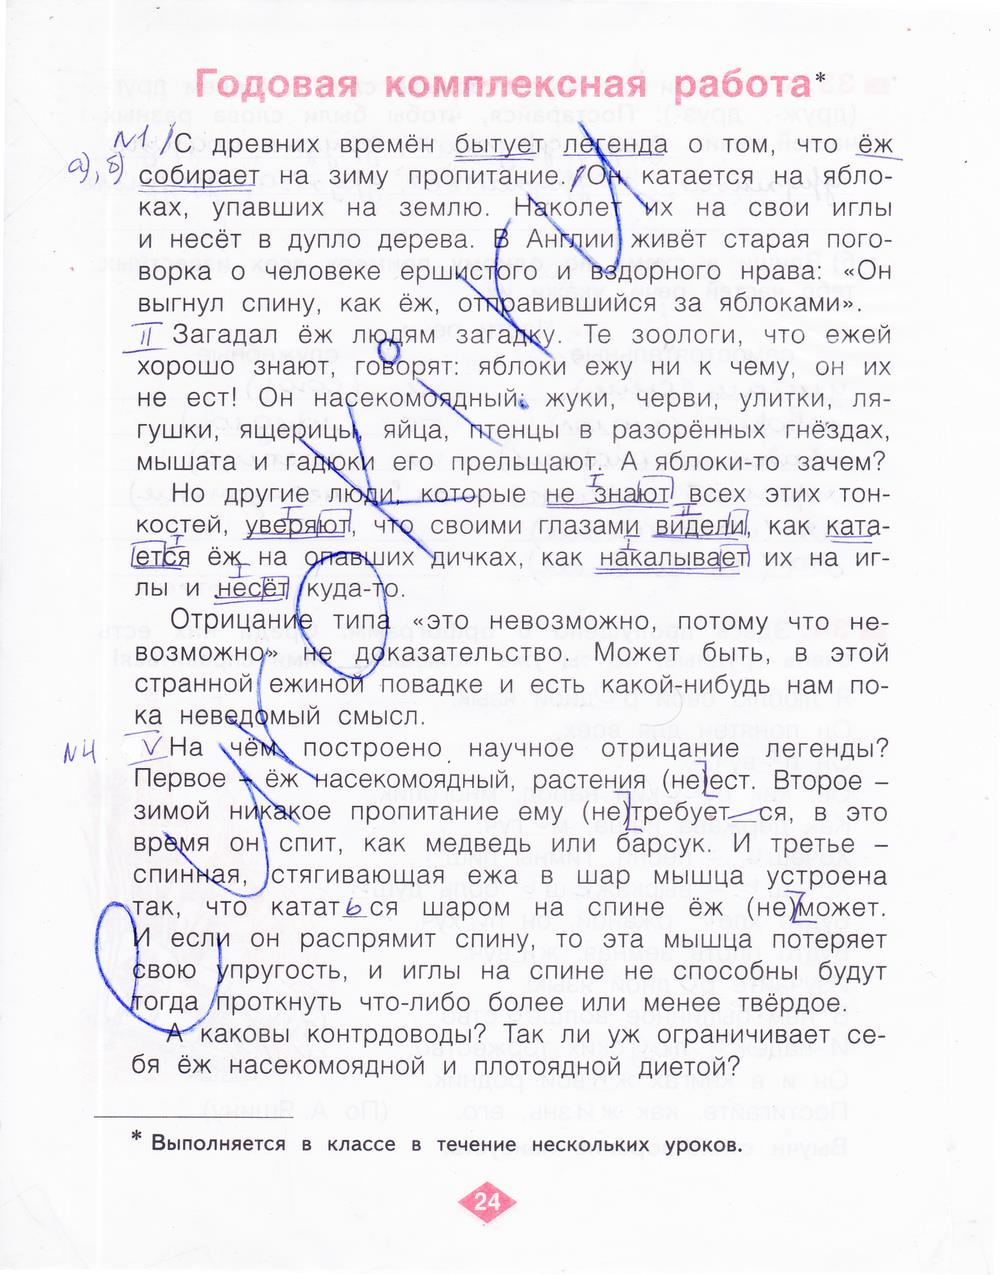 гдз 4 класс рабочая тетрадь часть 4 страница 24 русский язык Нечаева, Воскресенская